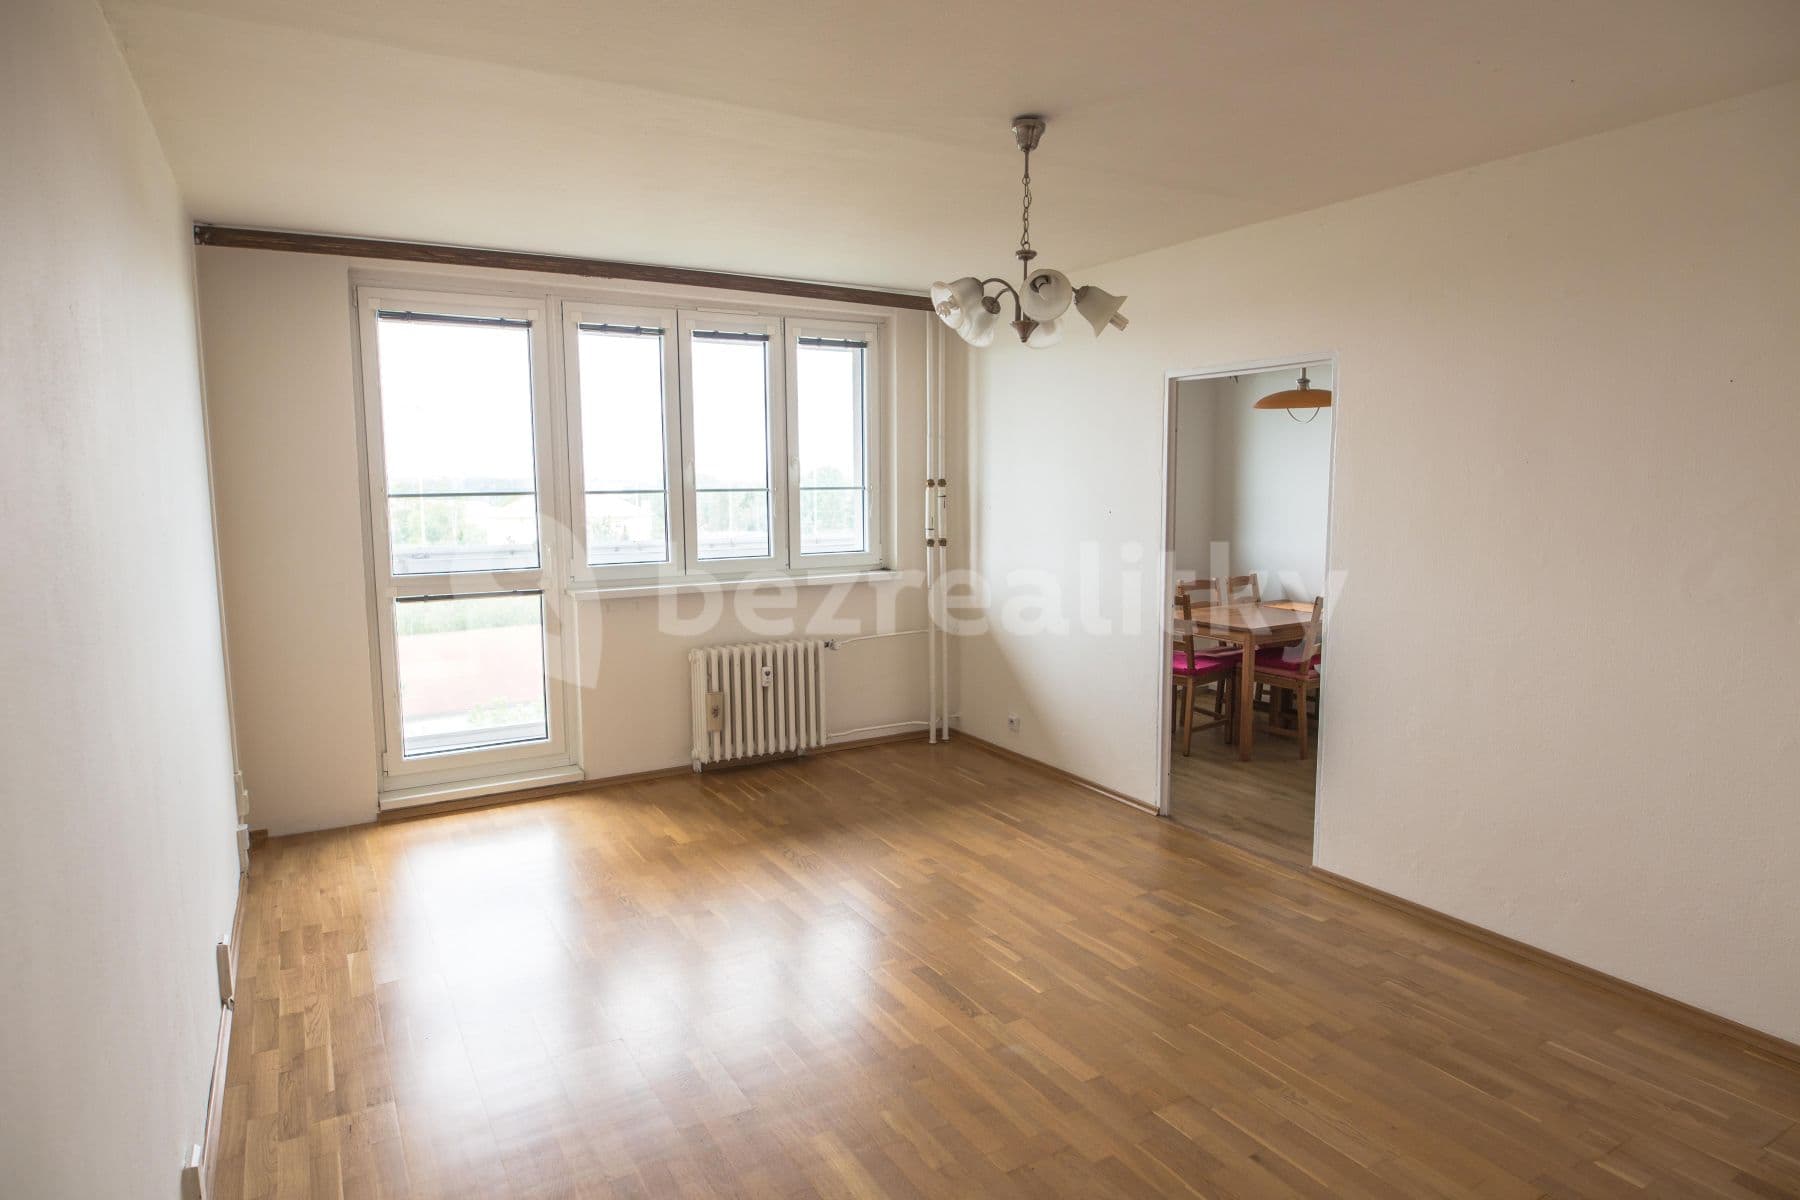 3 bedroom flat to rent, 68 m², Galandova, Prague, Prague